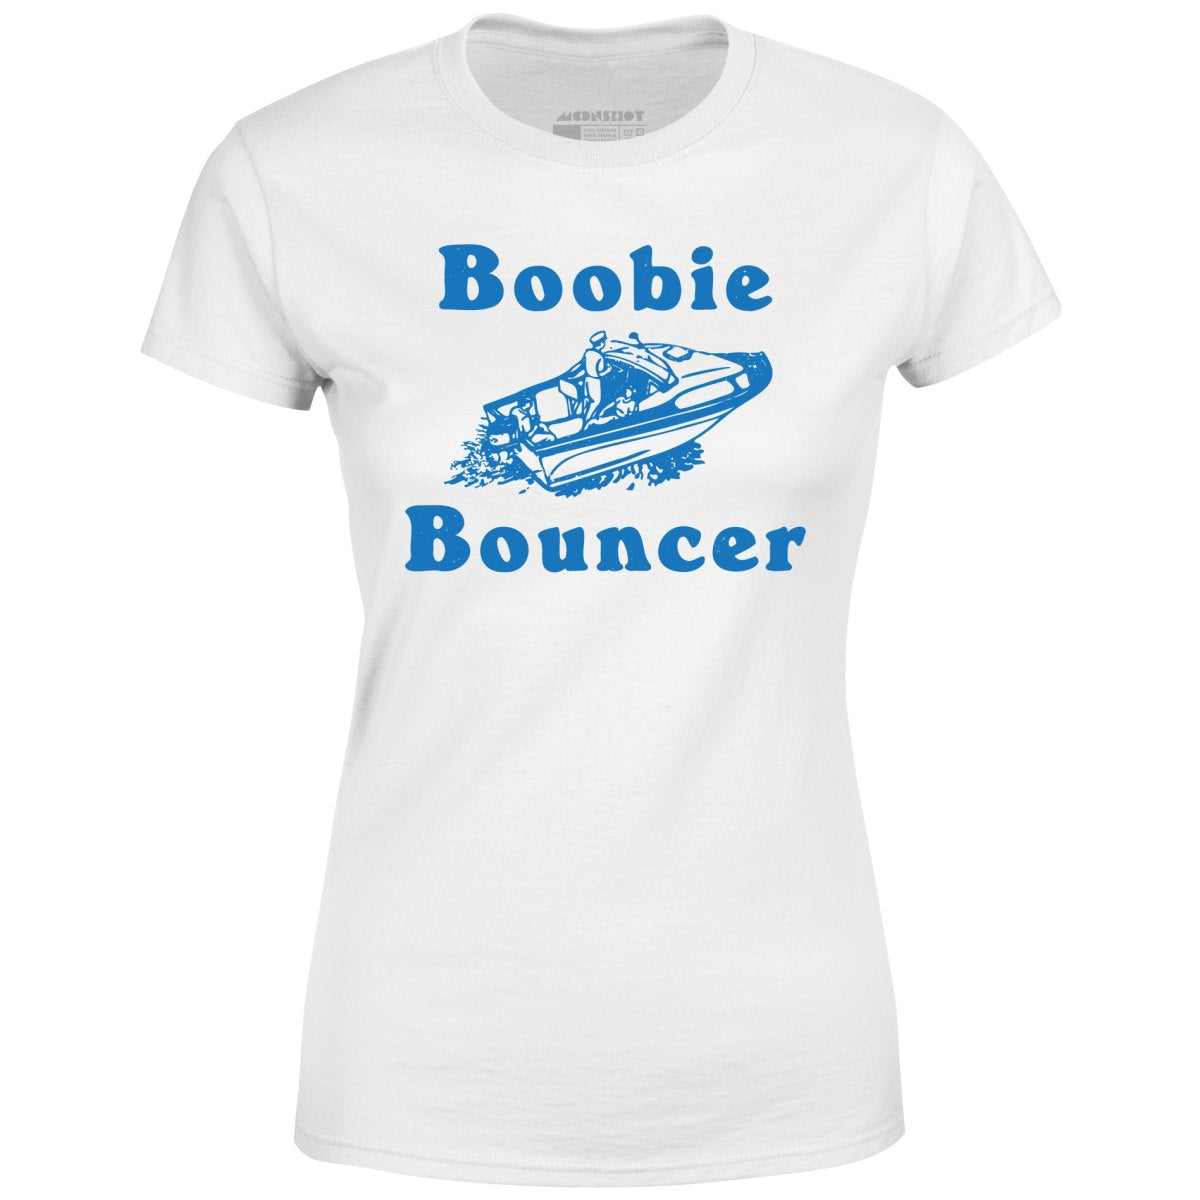 Boobie Bouncer - Women's T-Shirt